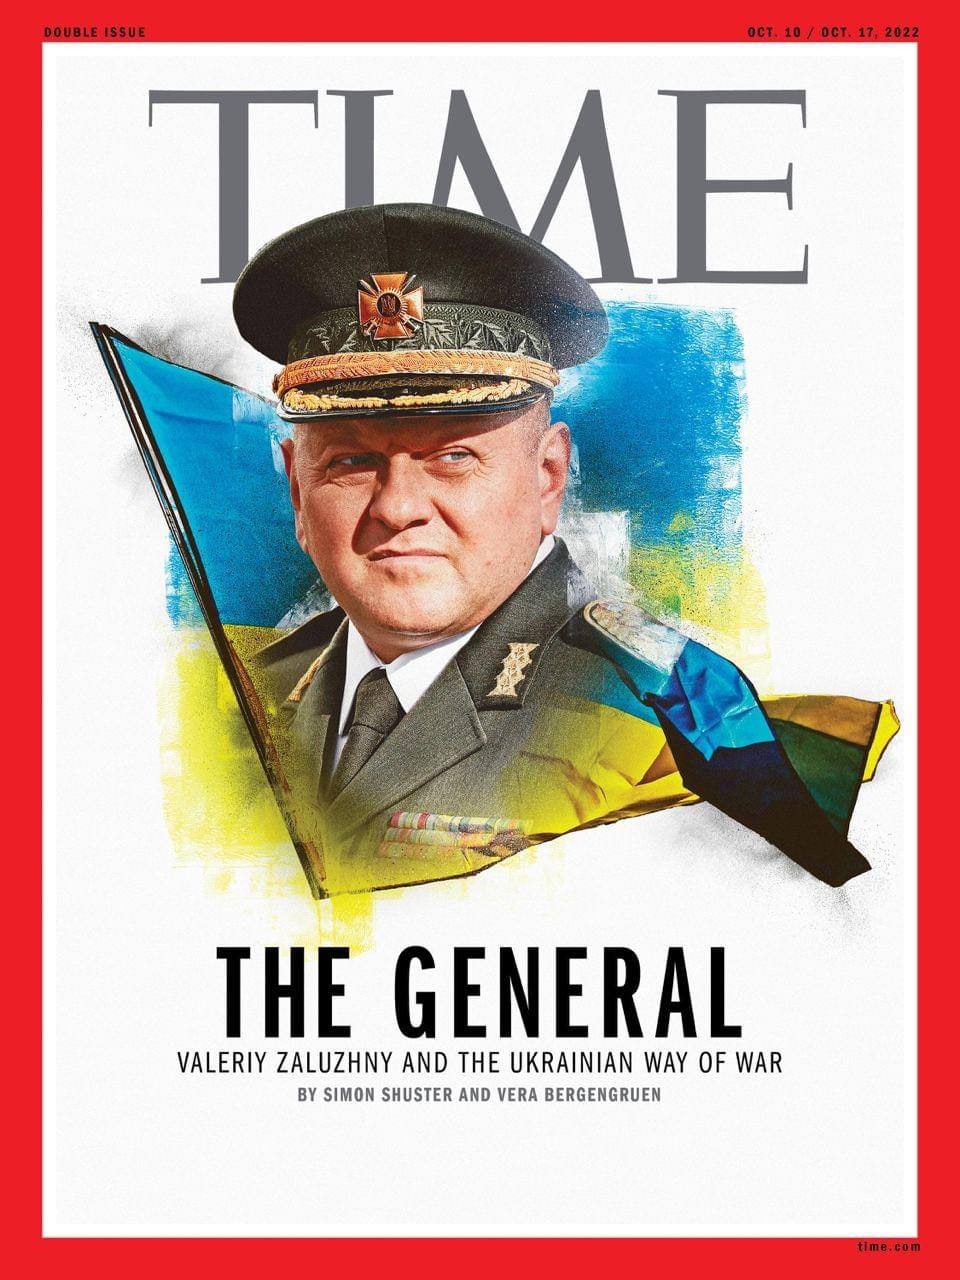 🦾🇺🇦Залізний генерал на обкладинці журналу "Time"